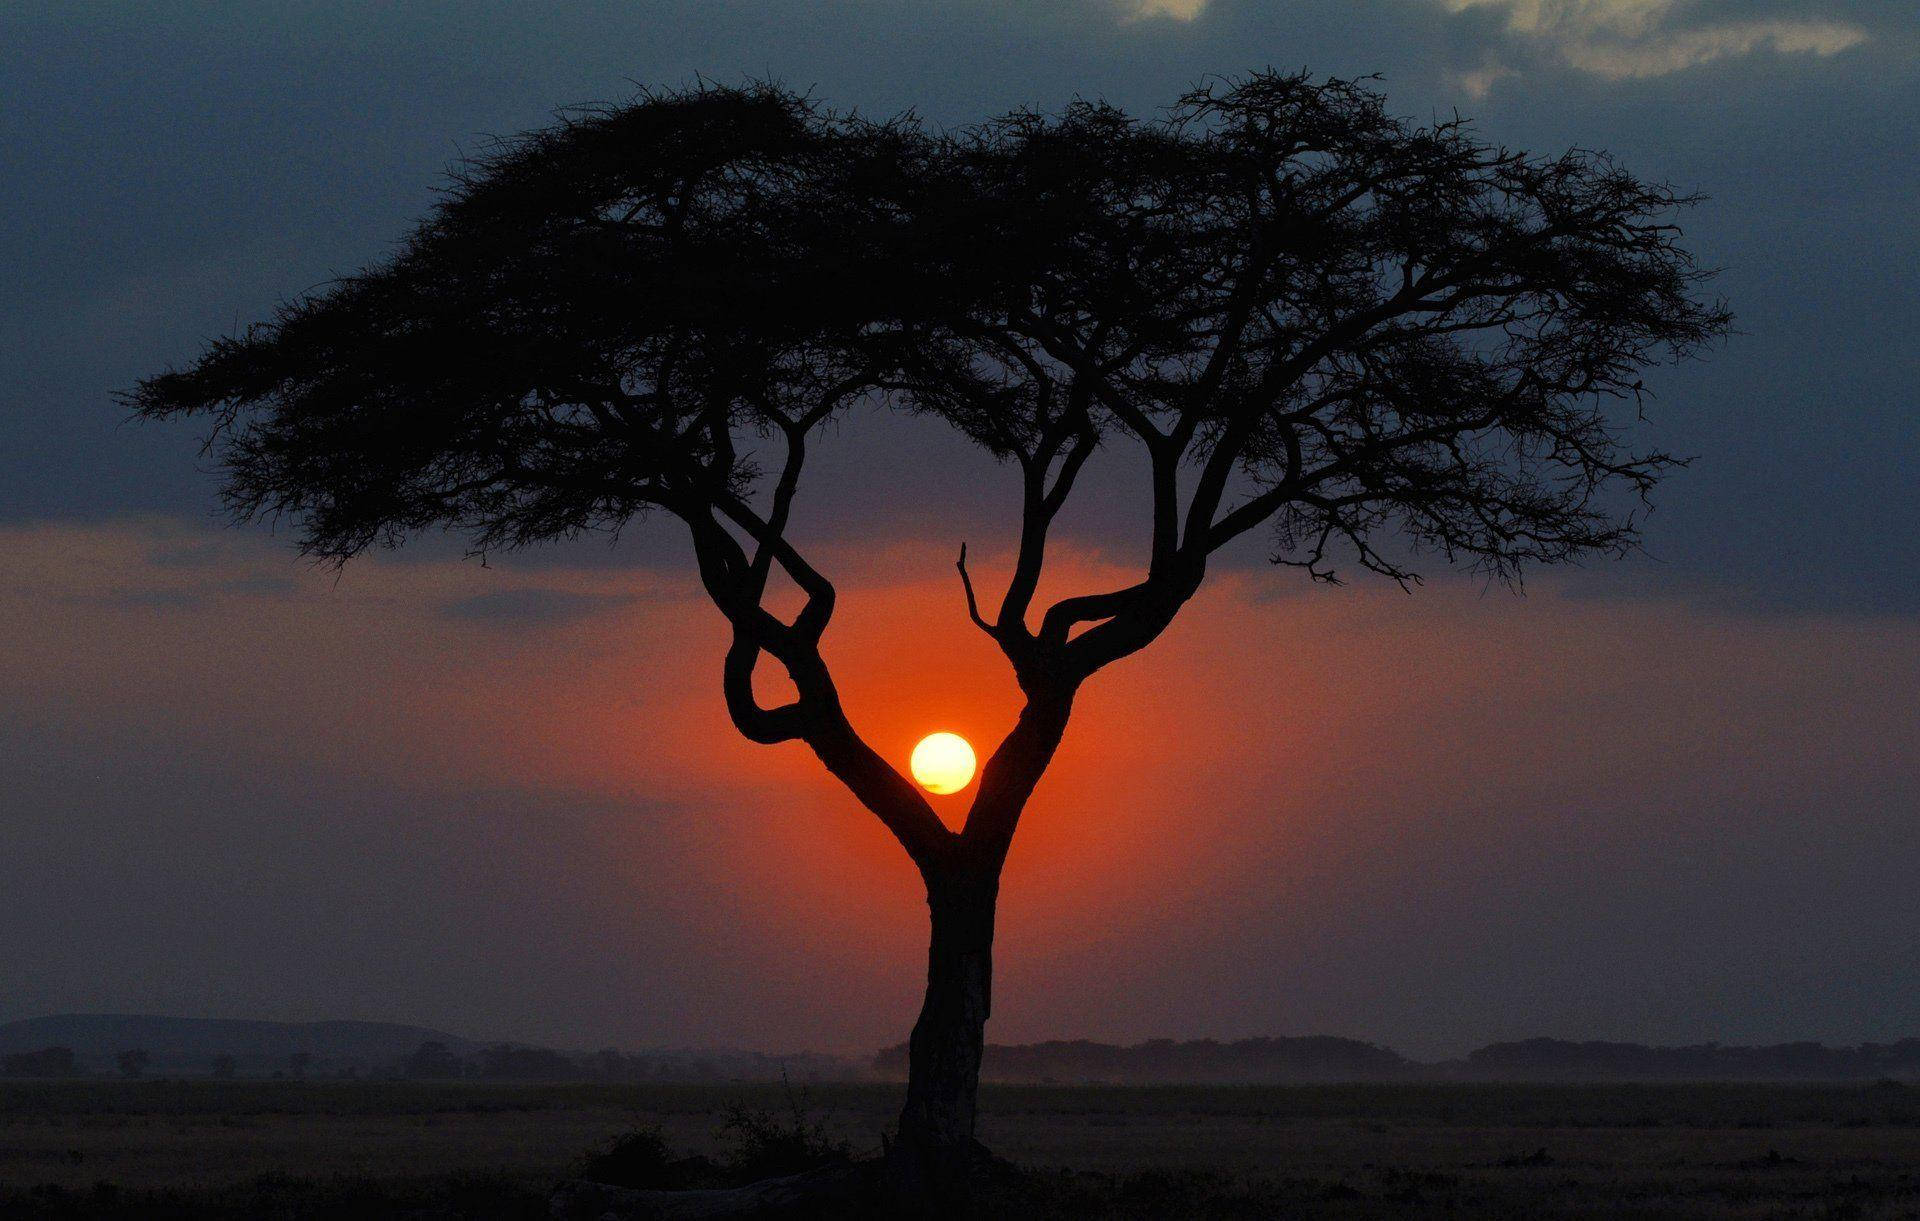 Kenianischerschirmbaum Bei Sonnenuntergang Wallpaper